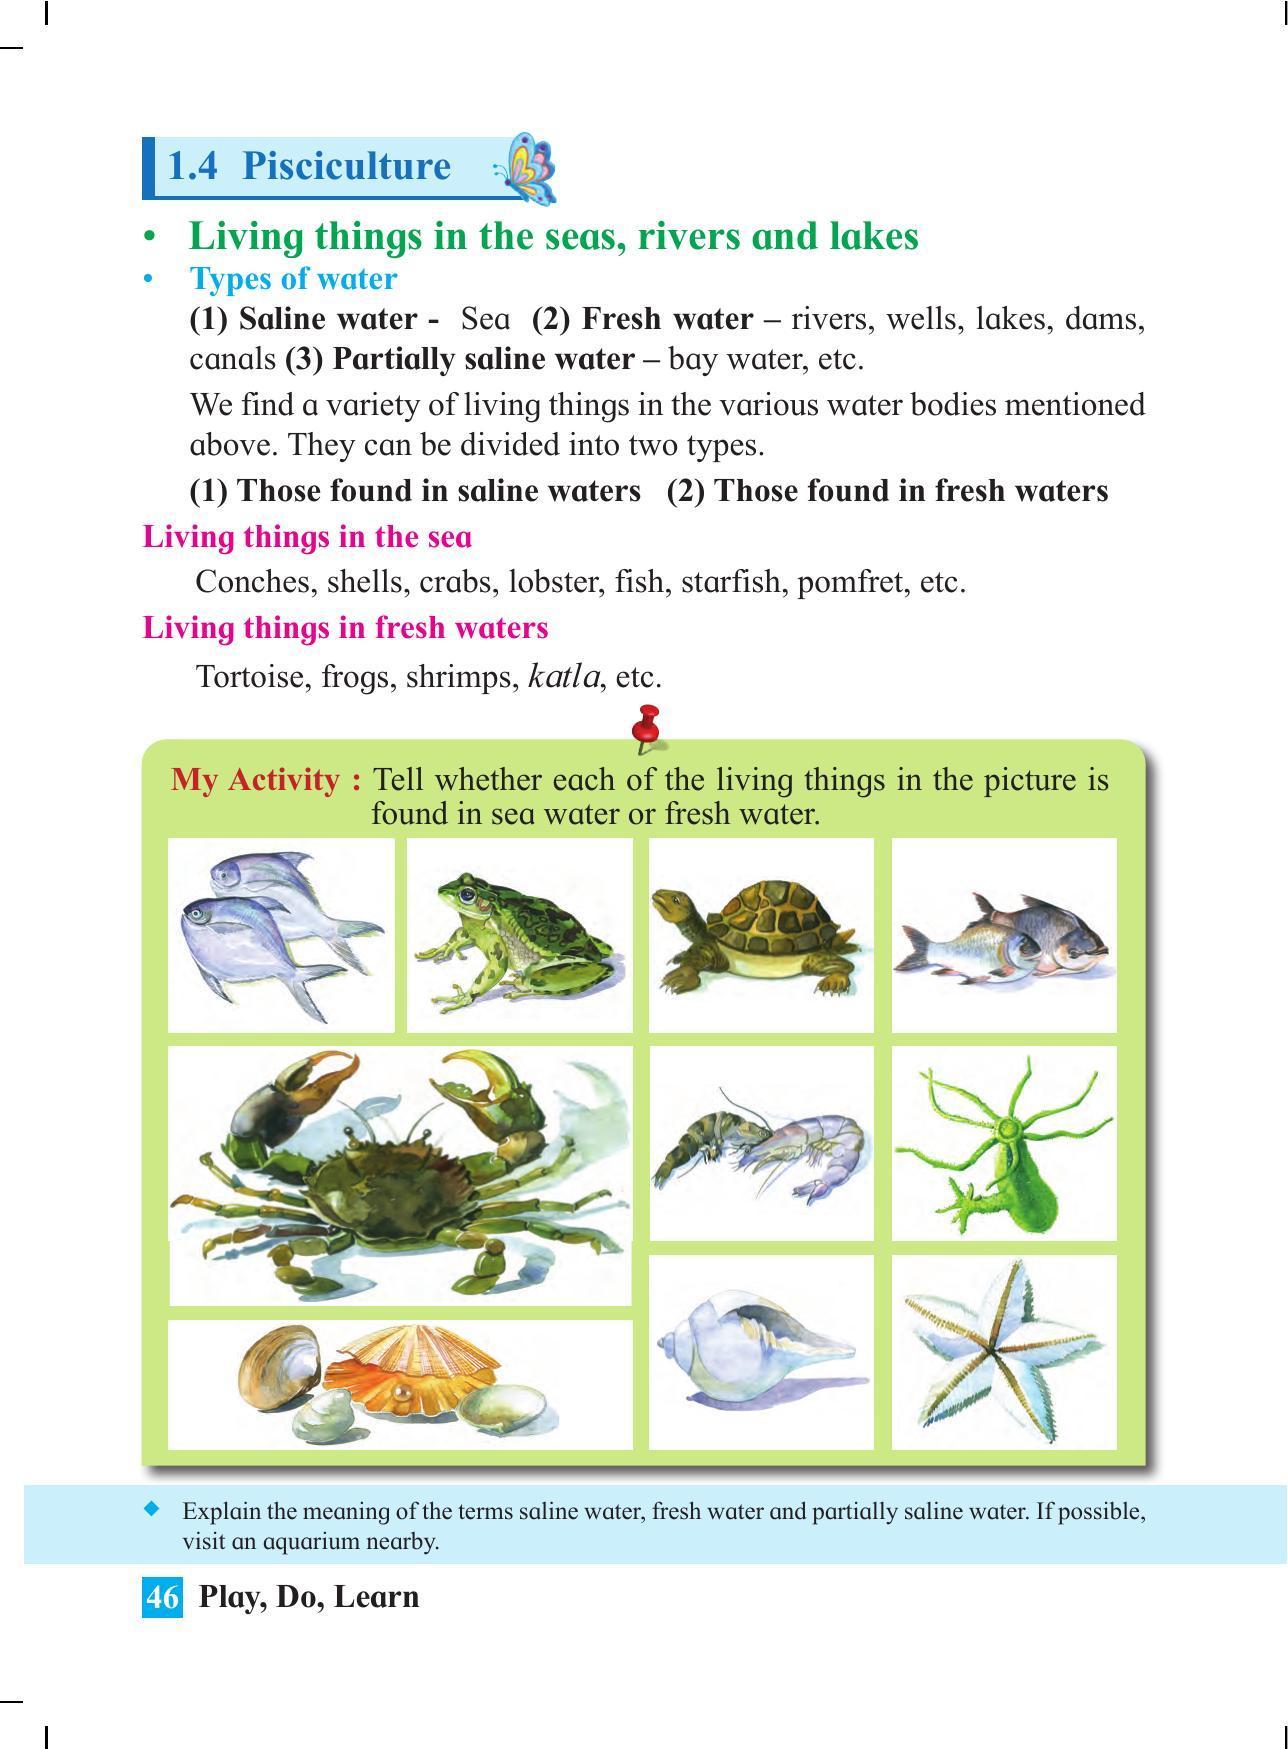 Maharashtra Board Class 4 Play Do Learn (English Medium) Textbook - Page 55